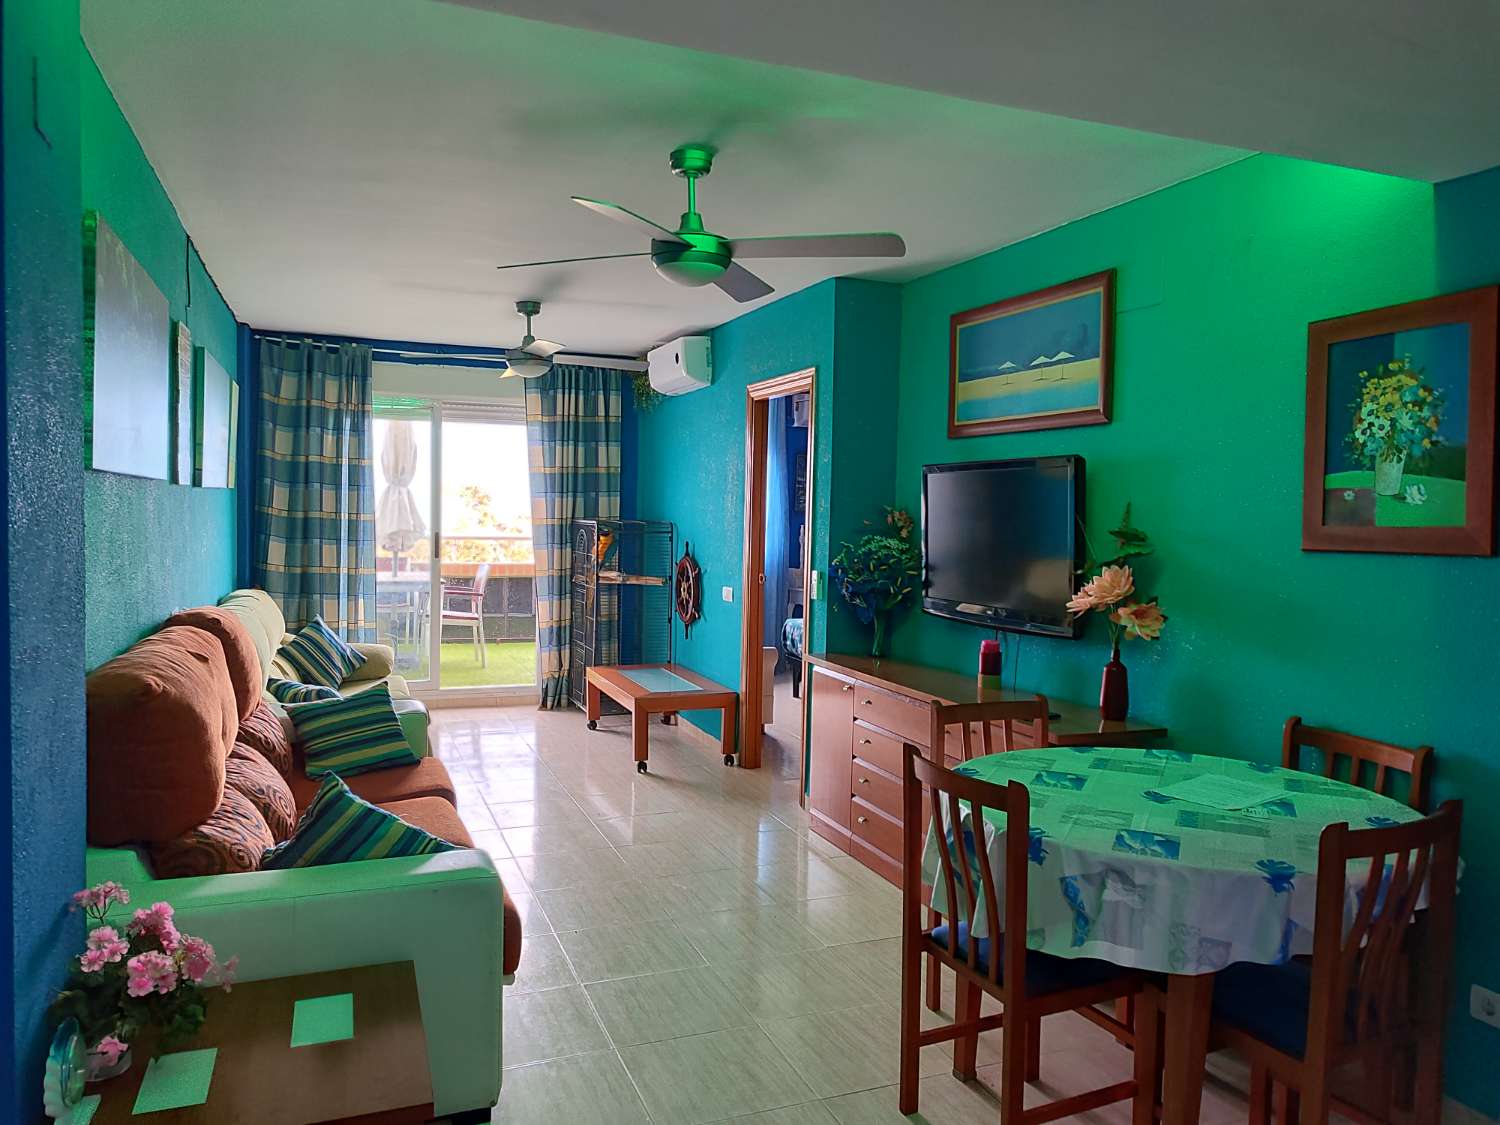 Apartment for sale in Costa Marina (Oropesa del Mar)